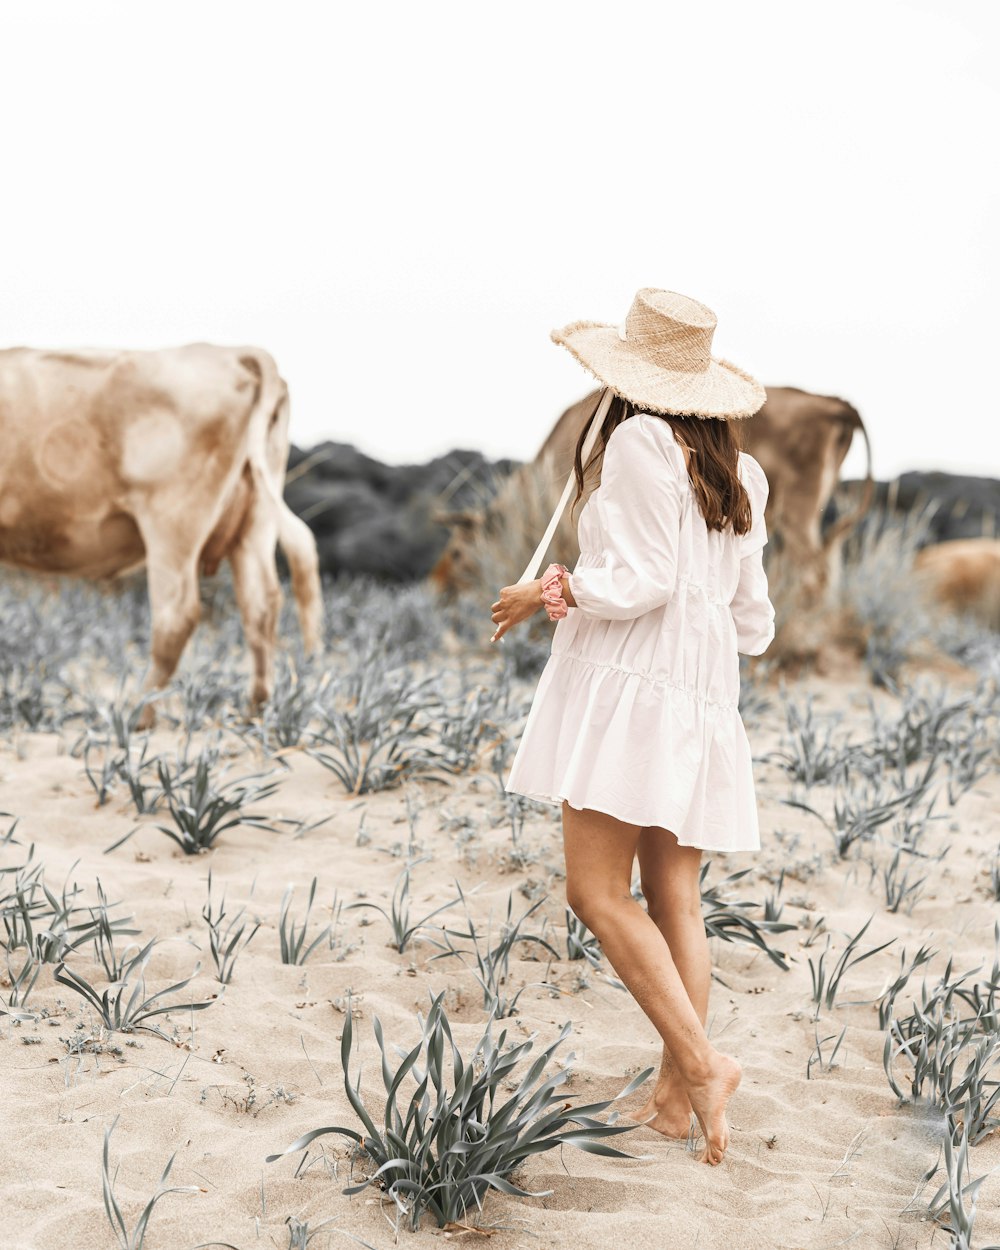 白いドレスと茶色の帽子をかぶった女性が昼間、茶色の砂の上を歩く